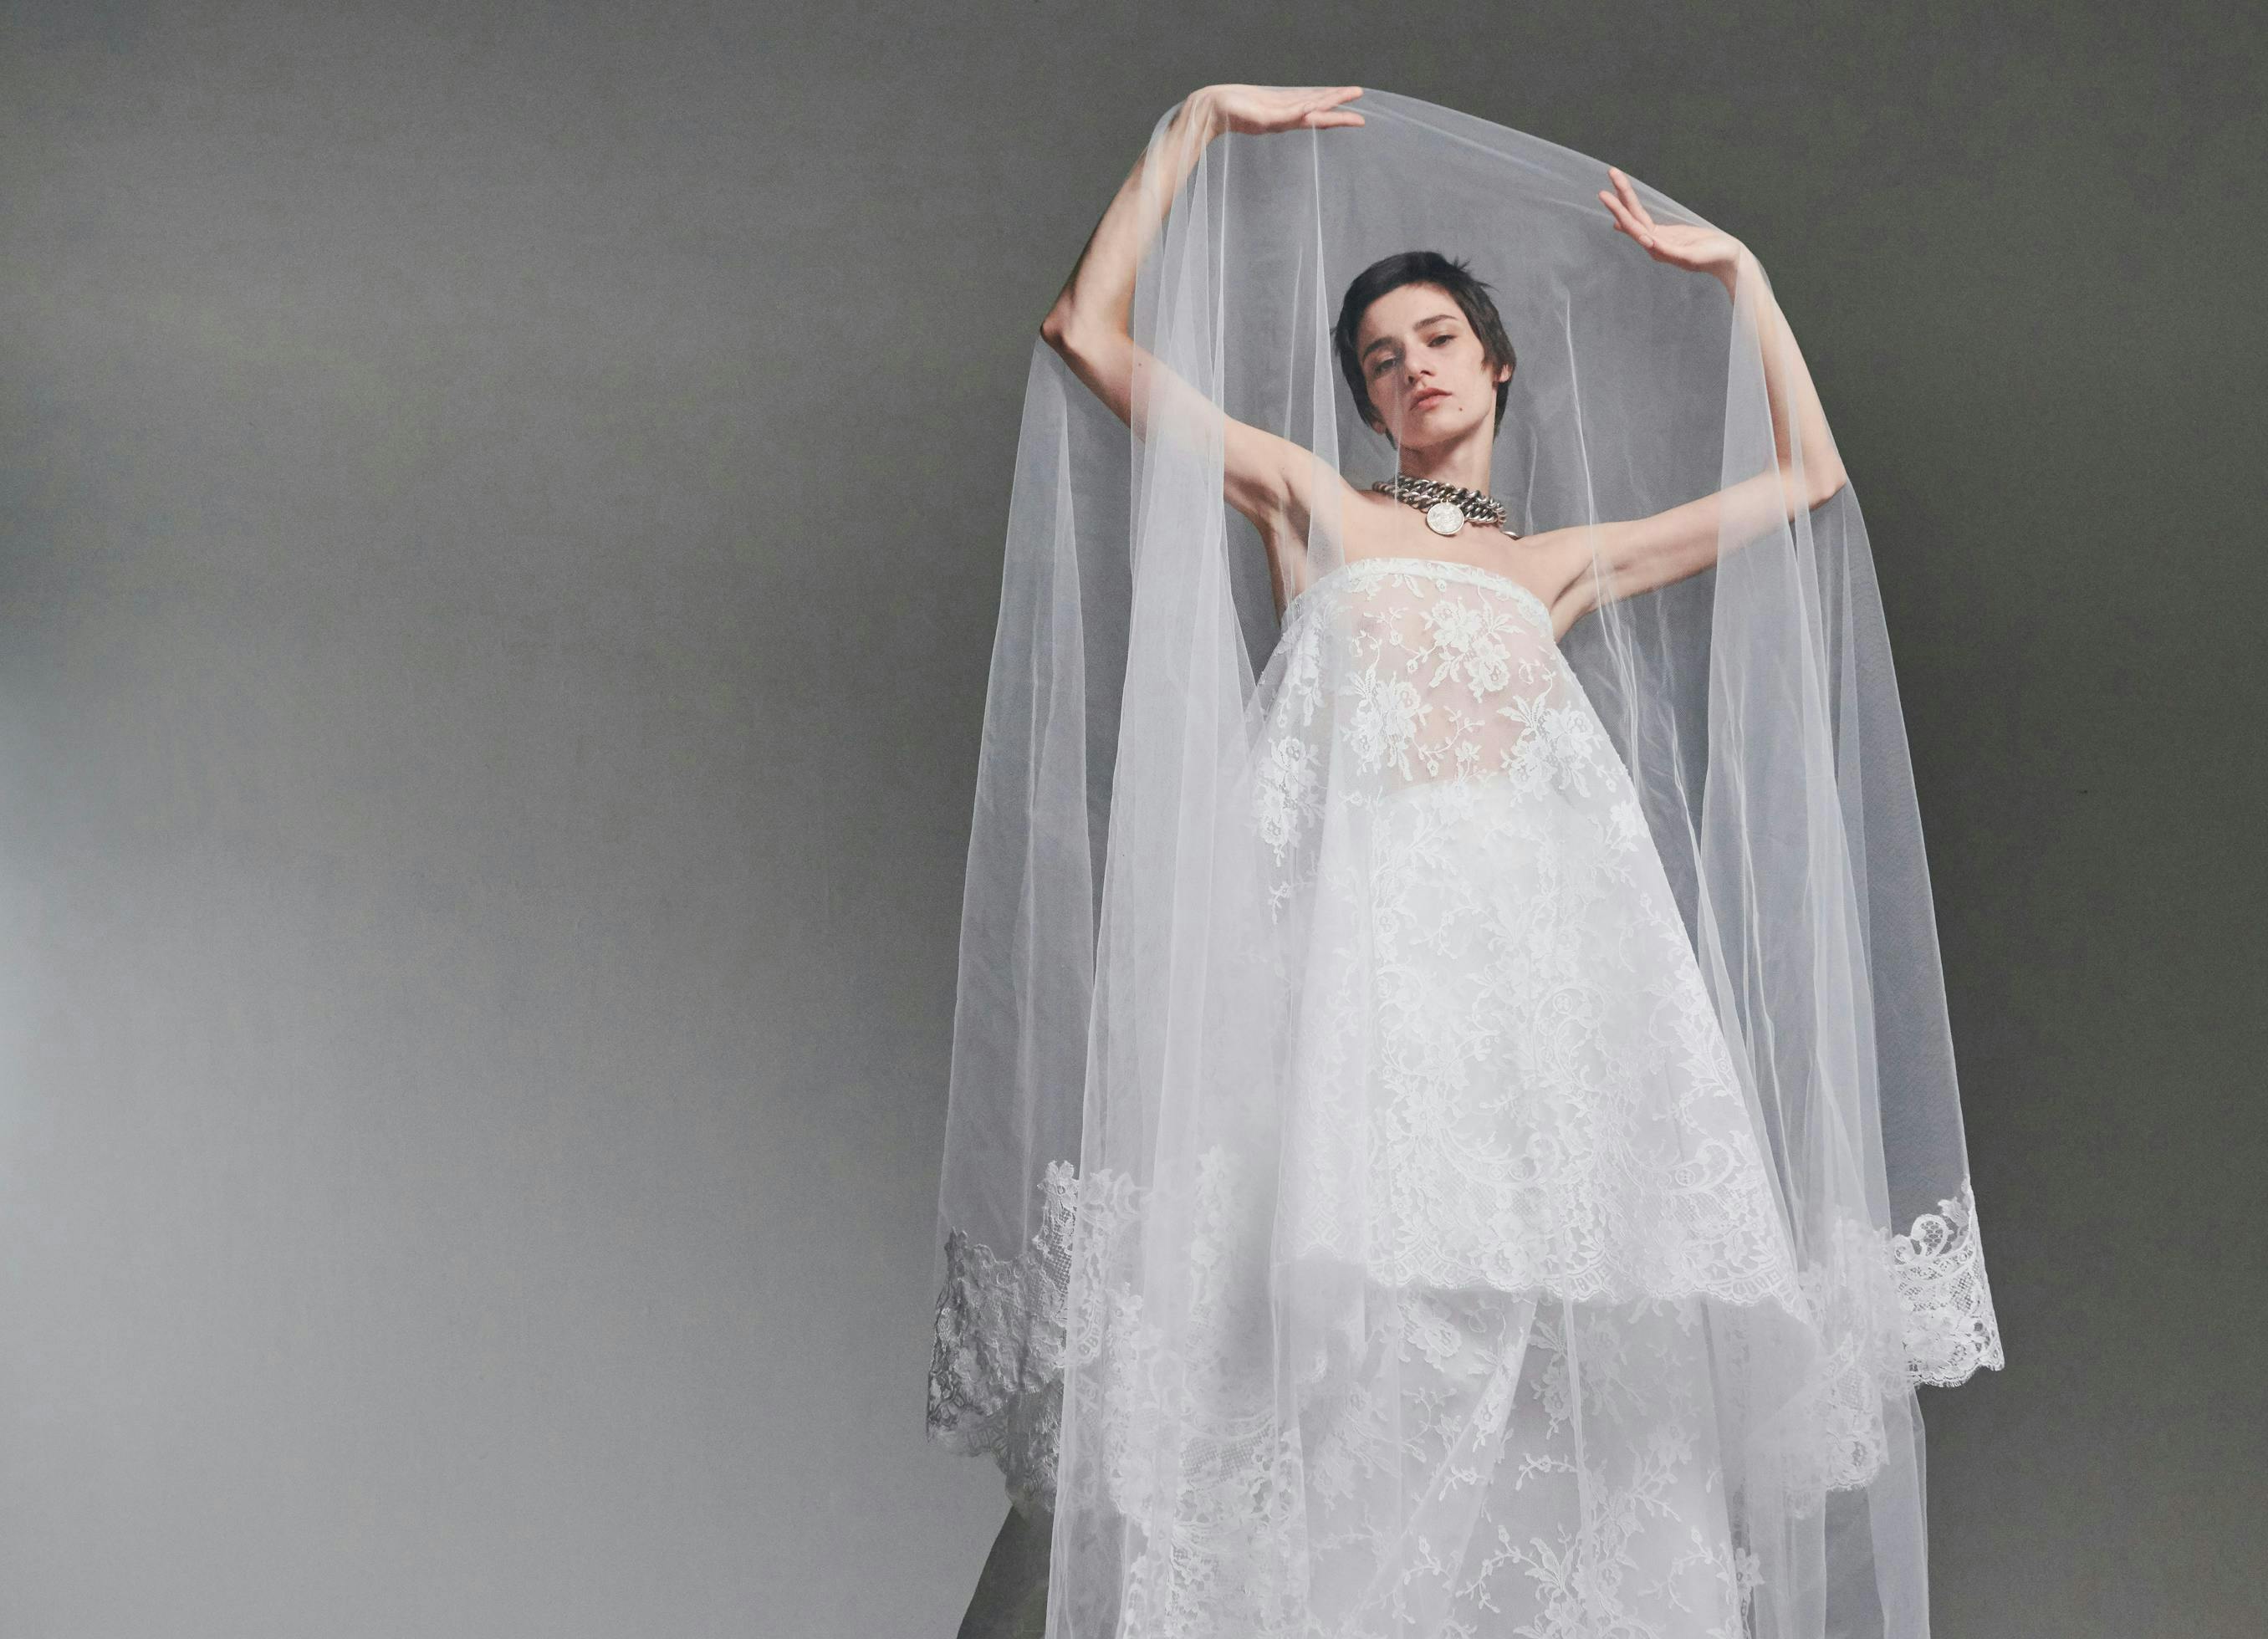 apparel clothing veil wedding robe wedding gown gown fashion